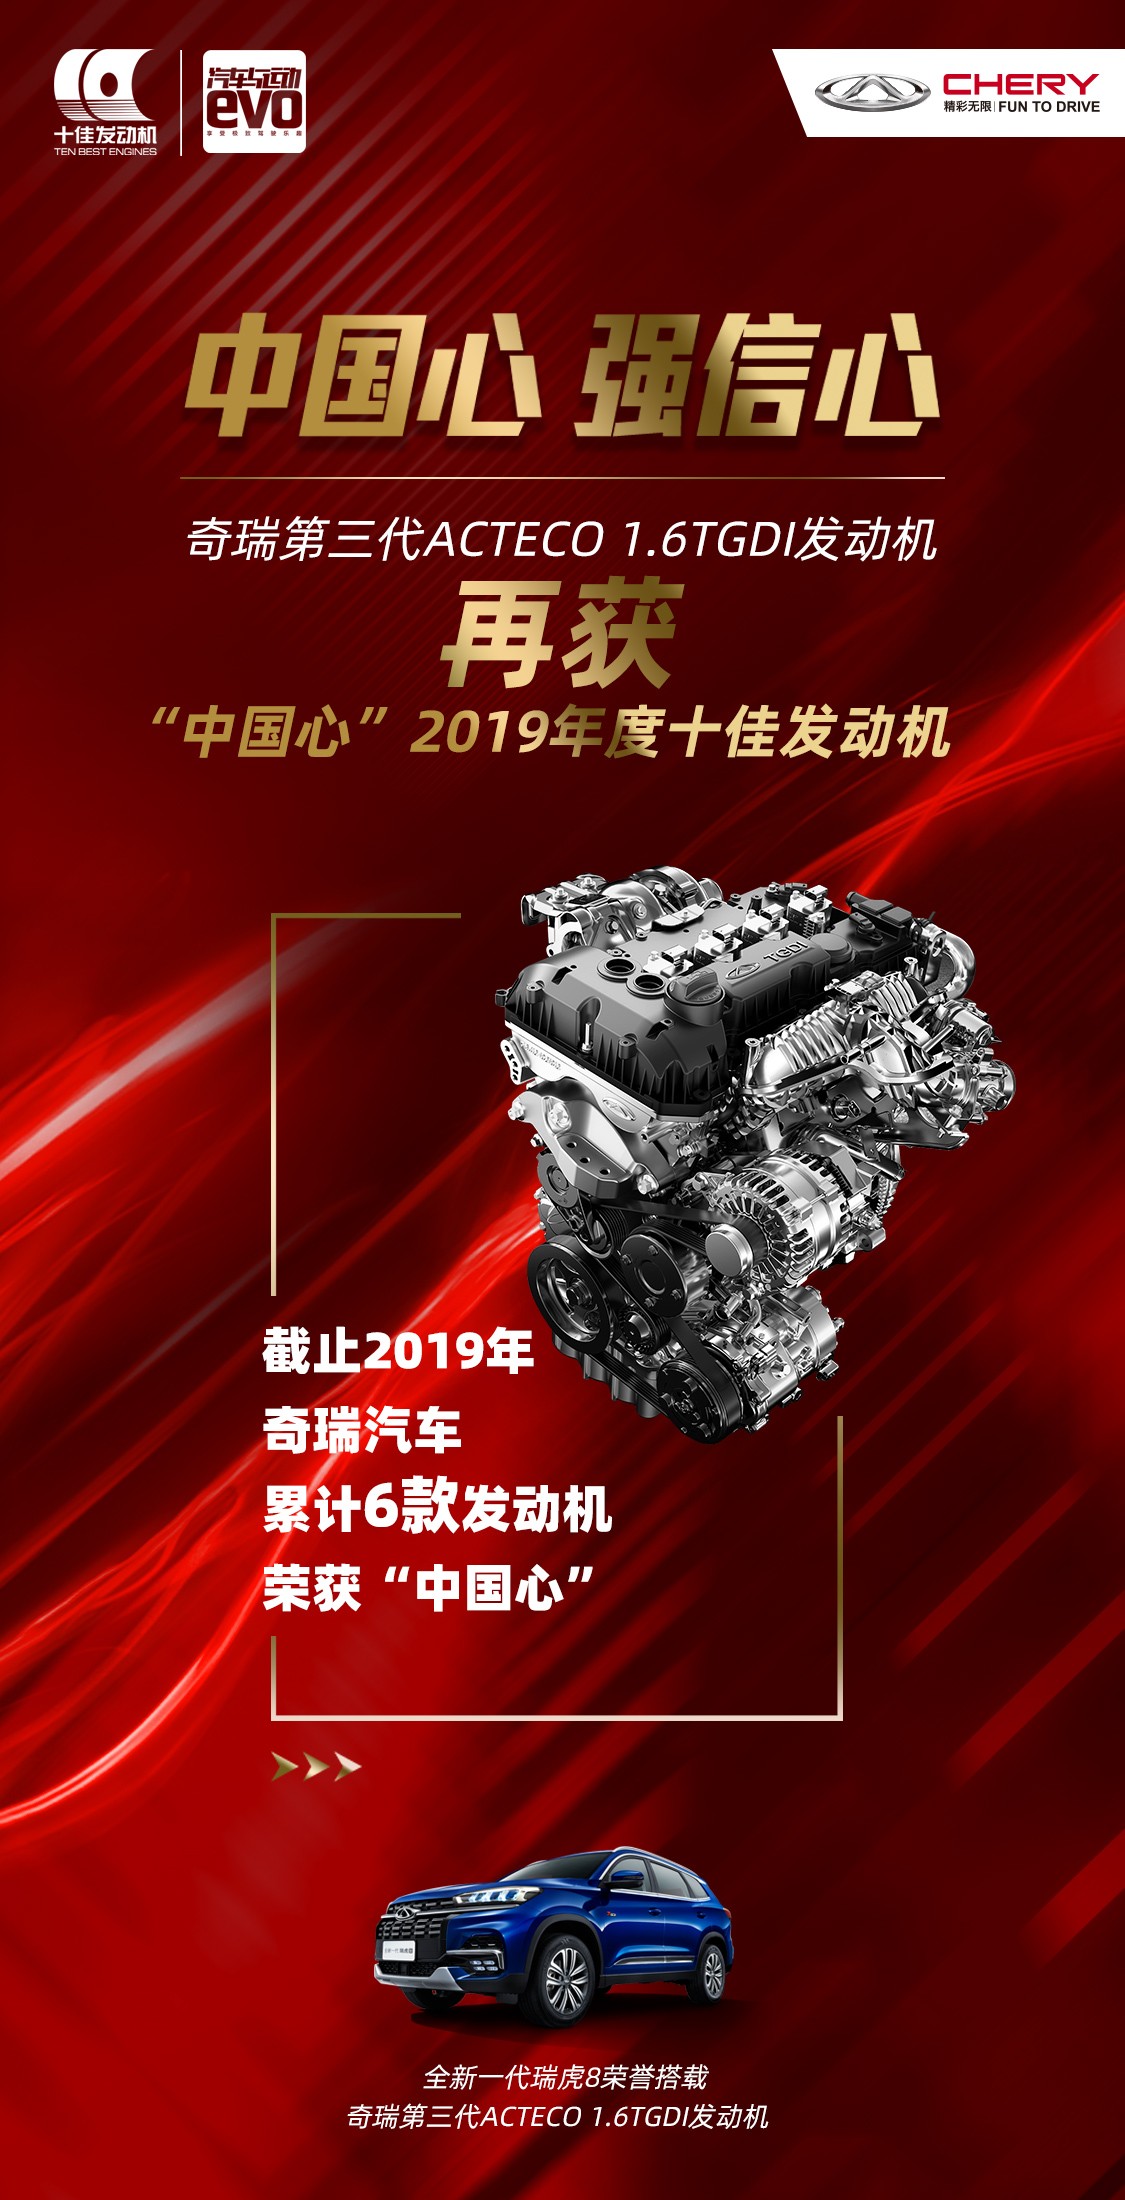 【奇瑞汽车】“中国心”2019年度十佳发动机公布 技术奇瑞再获殊荣